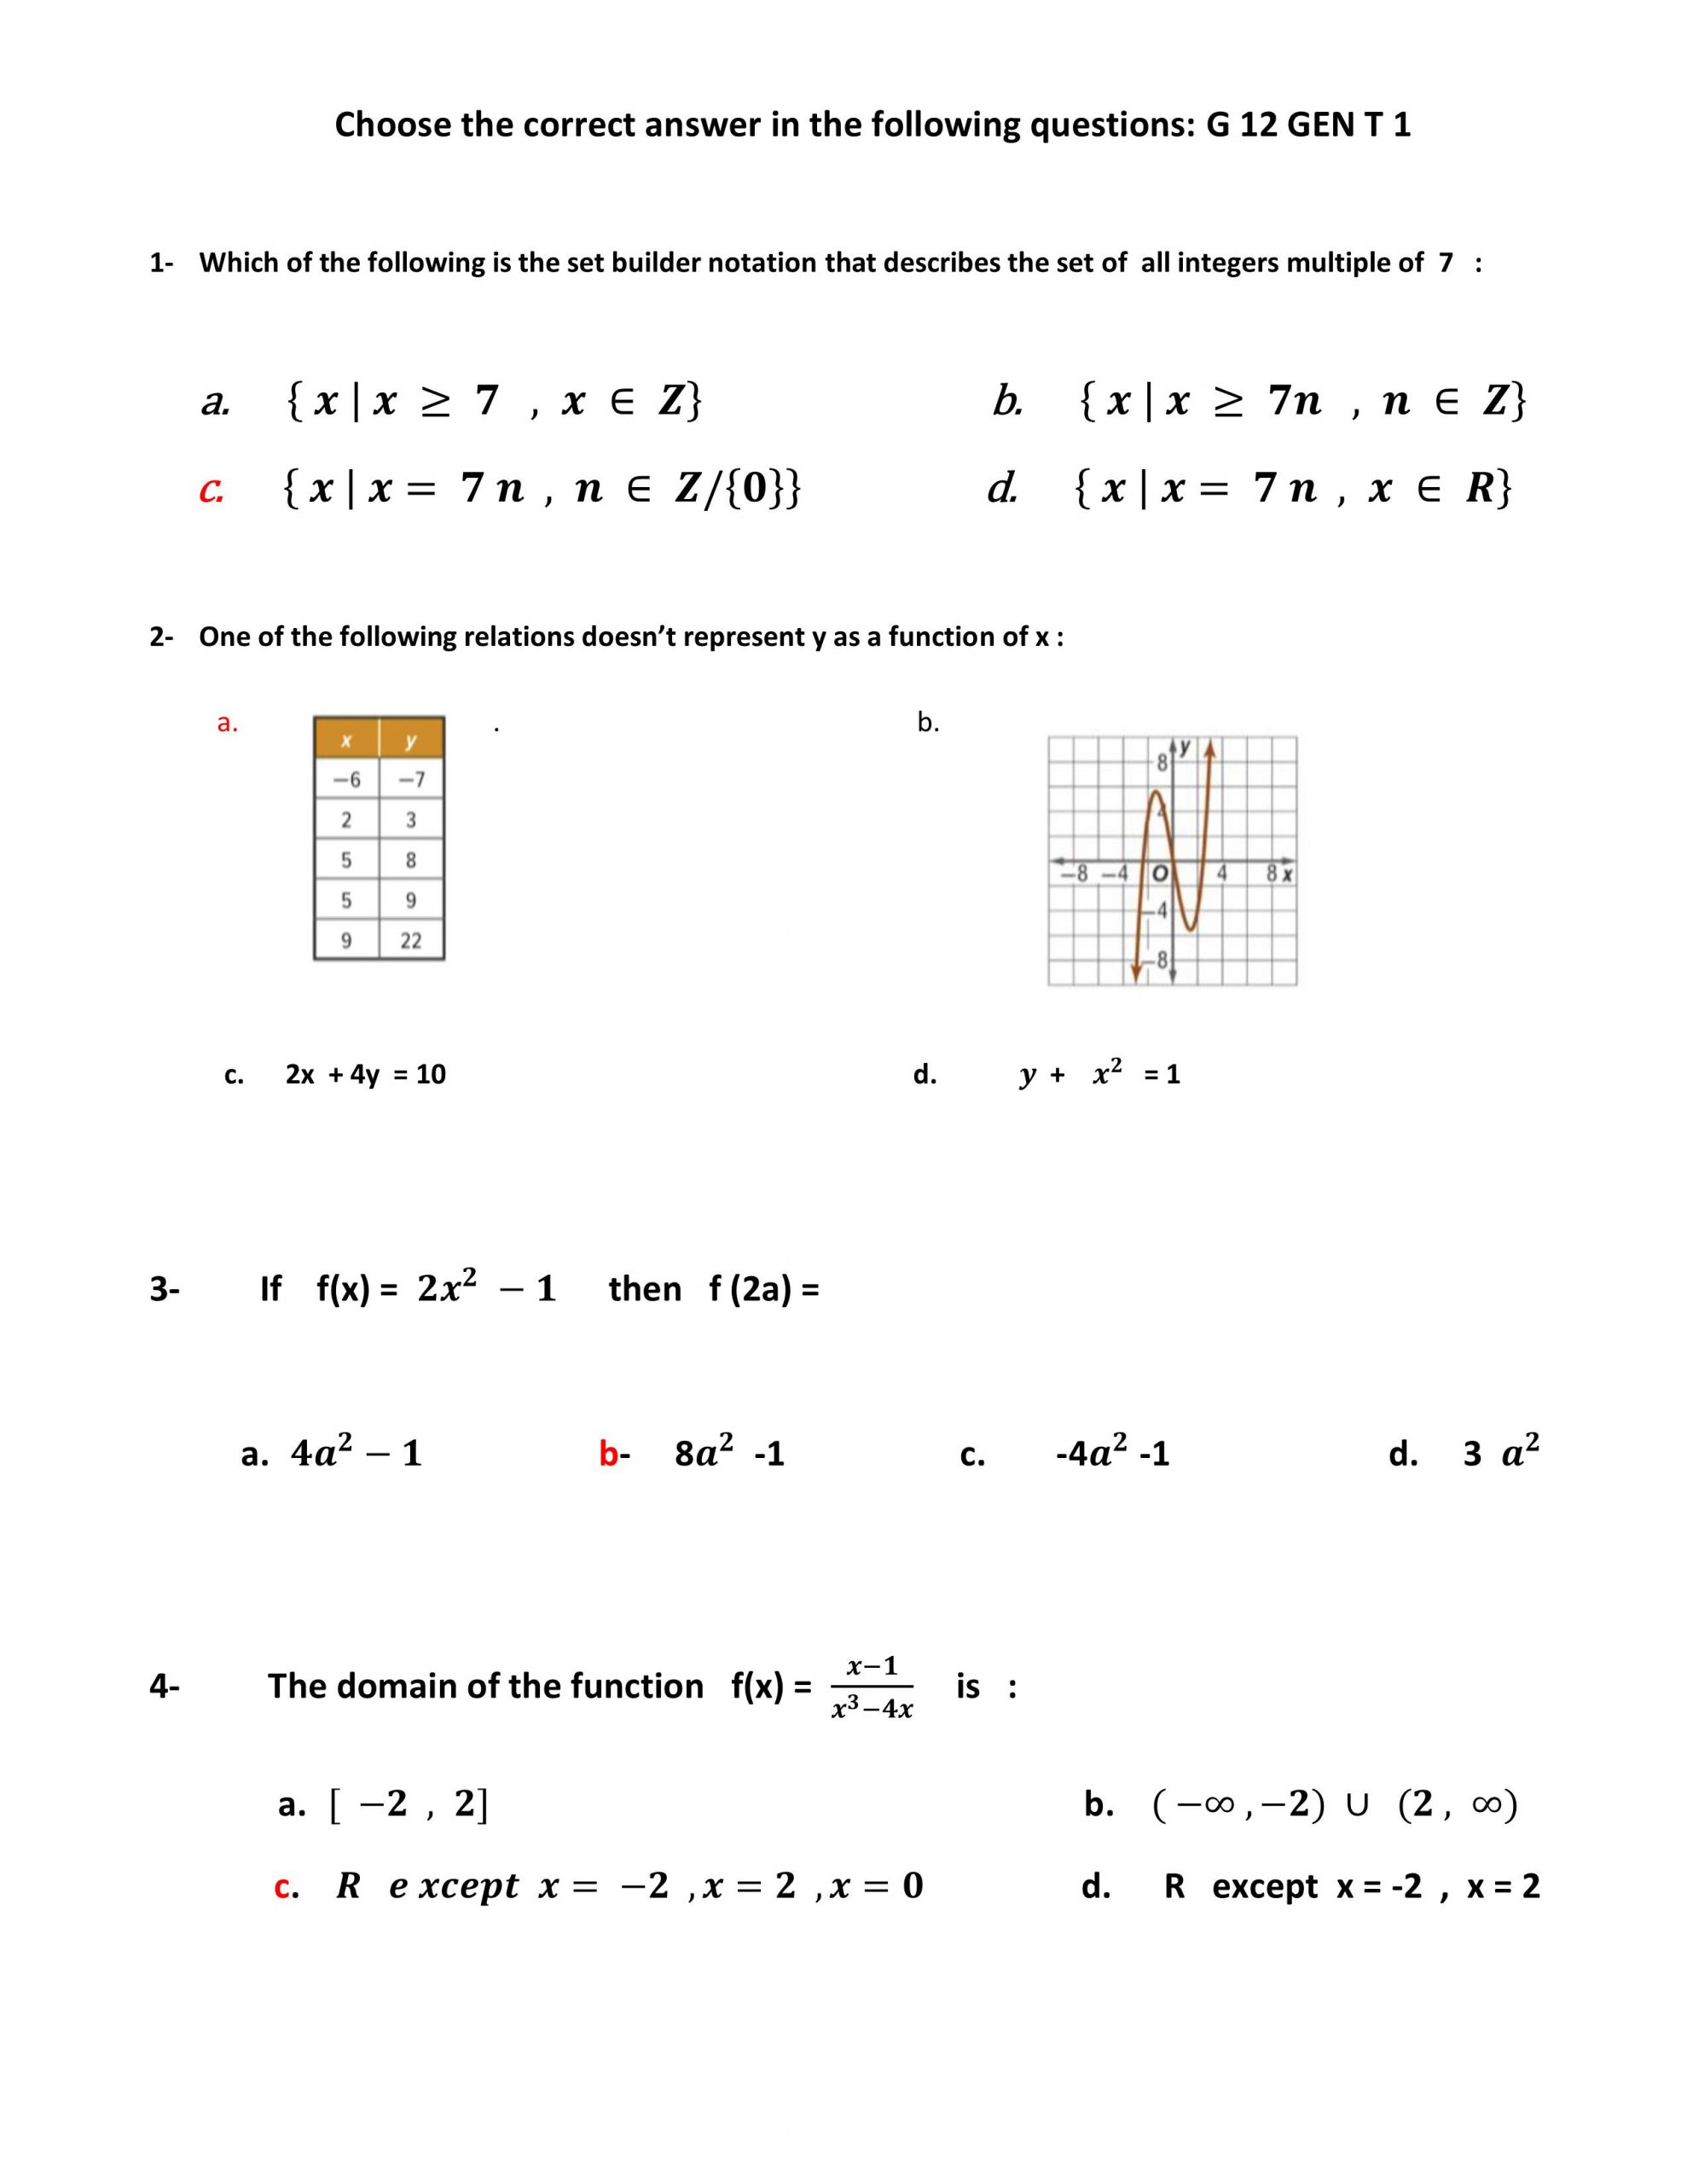 حل اوراق عمل مراجعة نهائية بالانجليزي الصف الثاني عشر عام مادة الرياضيات المتكاملة